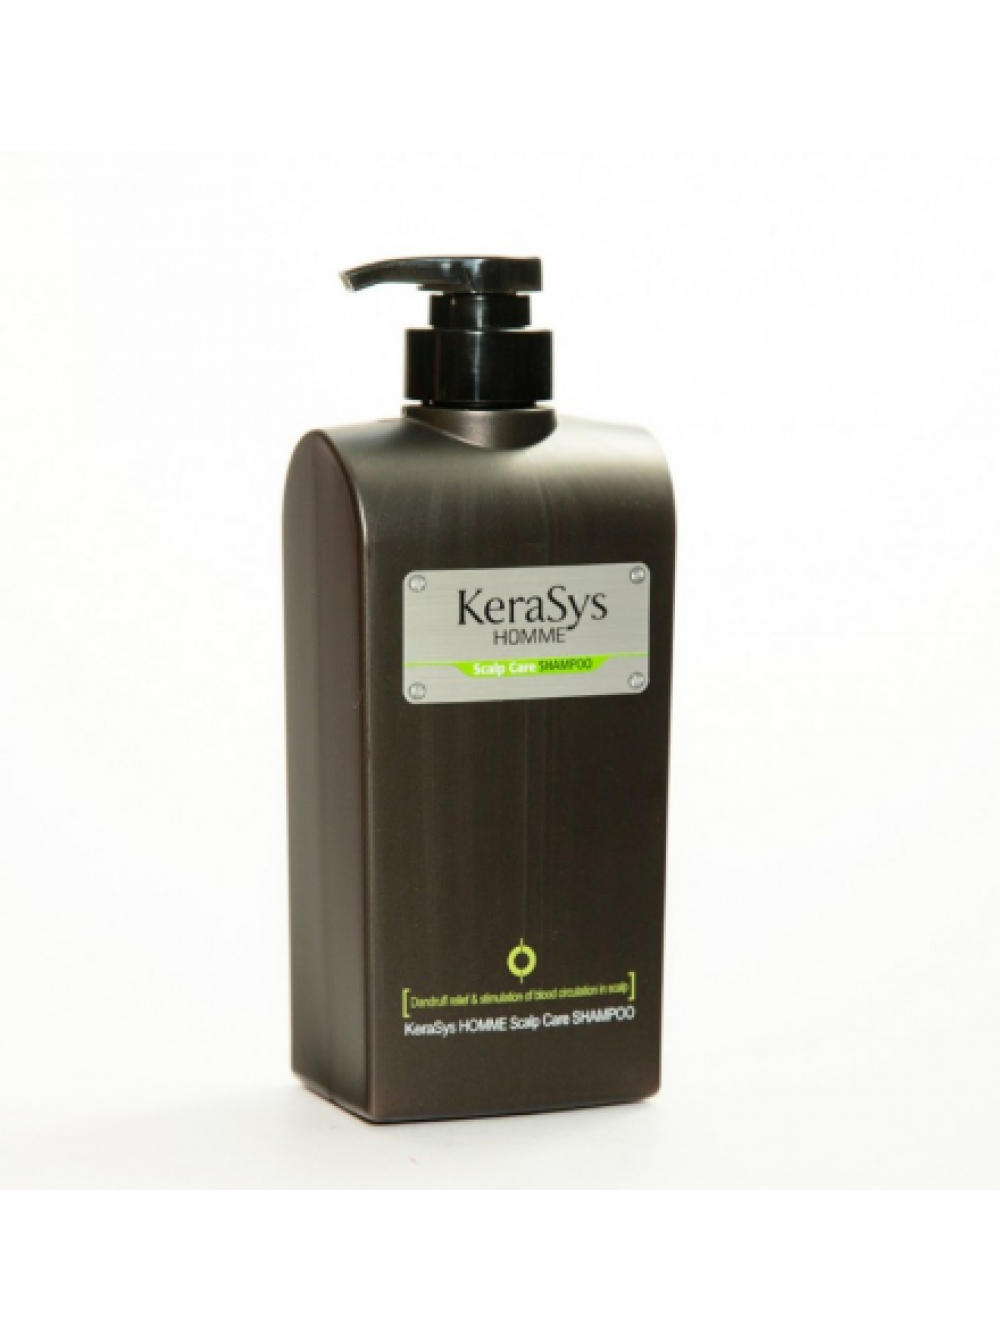 Kerasys шампунь для лечения кожи головы homme Scalp Care Shampoo 550 мл. Шампунь для волос Kerasys лечение кожи головы для мужчин 550мл Корея. Шампунь Kerasys освежающий 550 мл. Керасус шампунь на корейском.